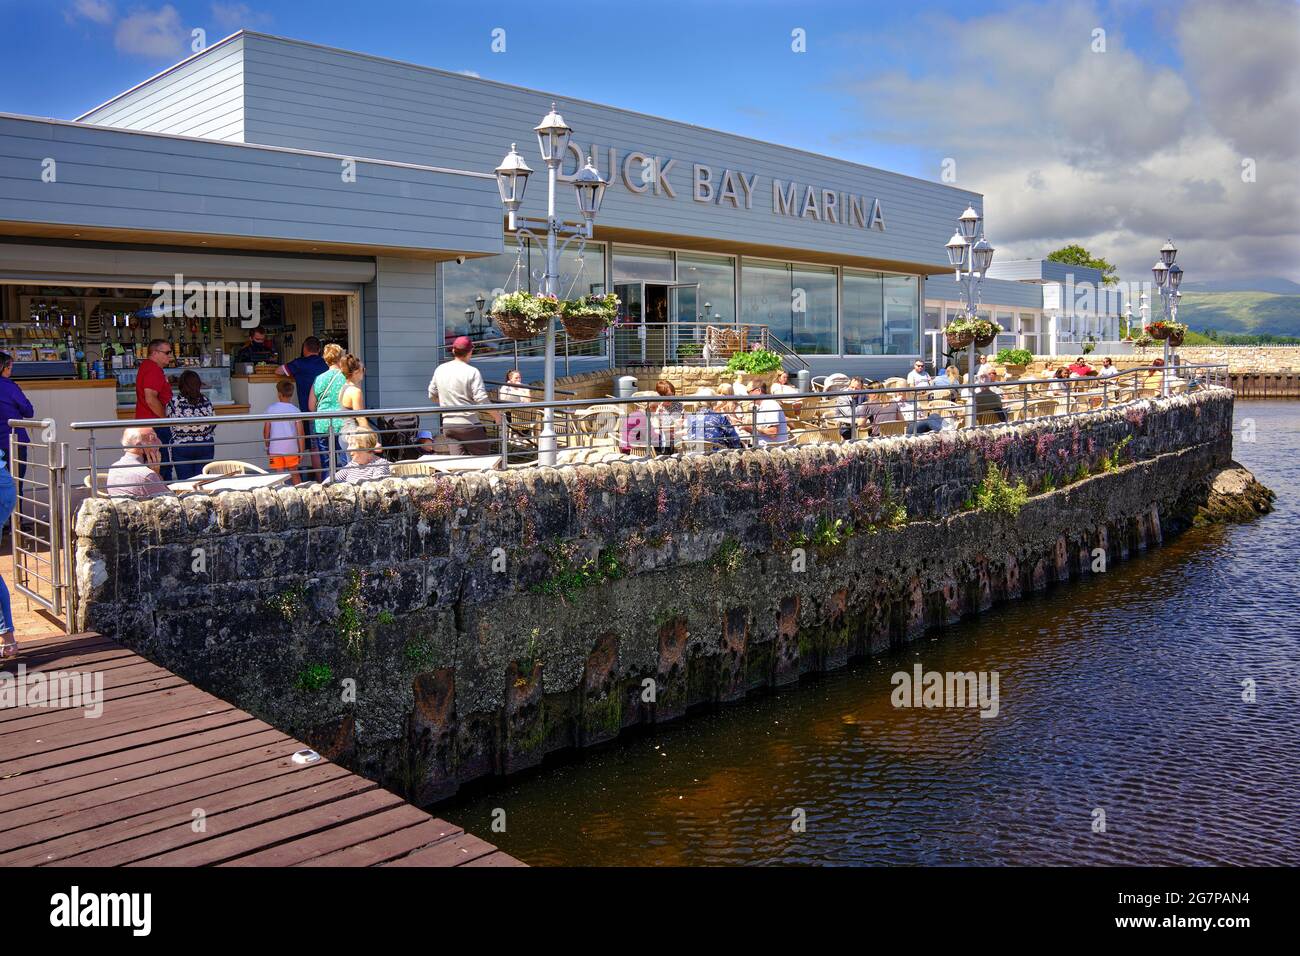 Les gens qui profitent du soleil sur les rives du Loch Lomond au café de Duck Bay Marina Banque D'Images